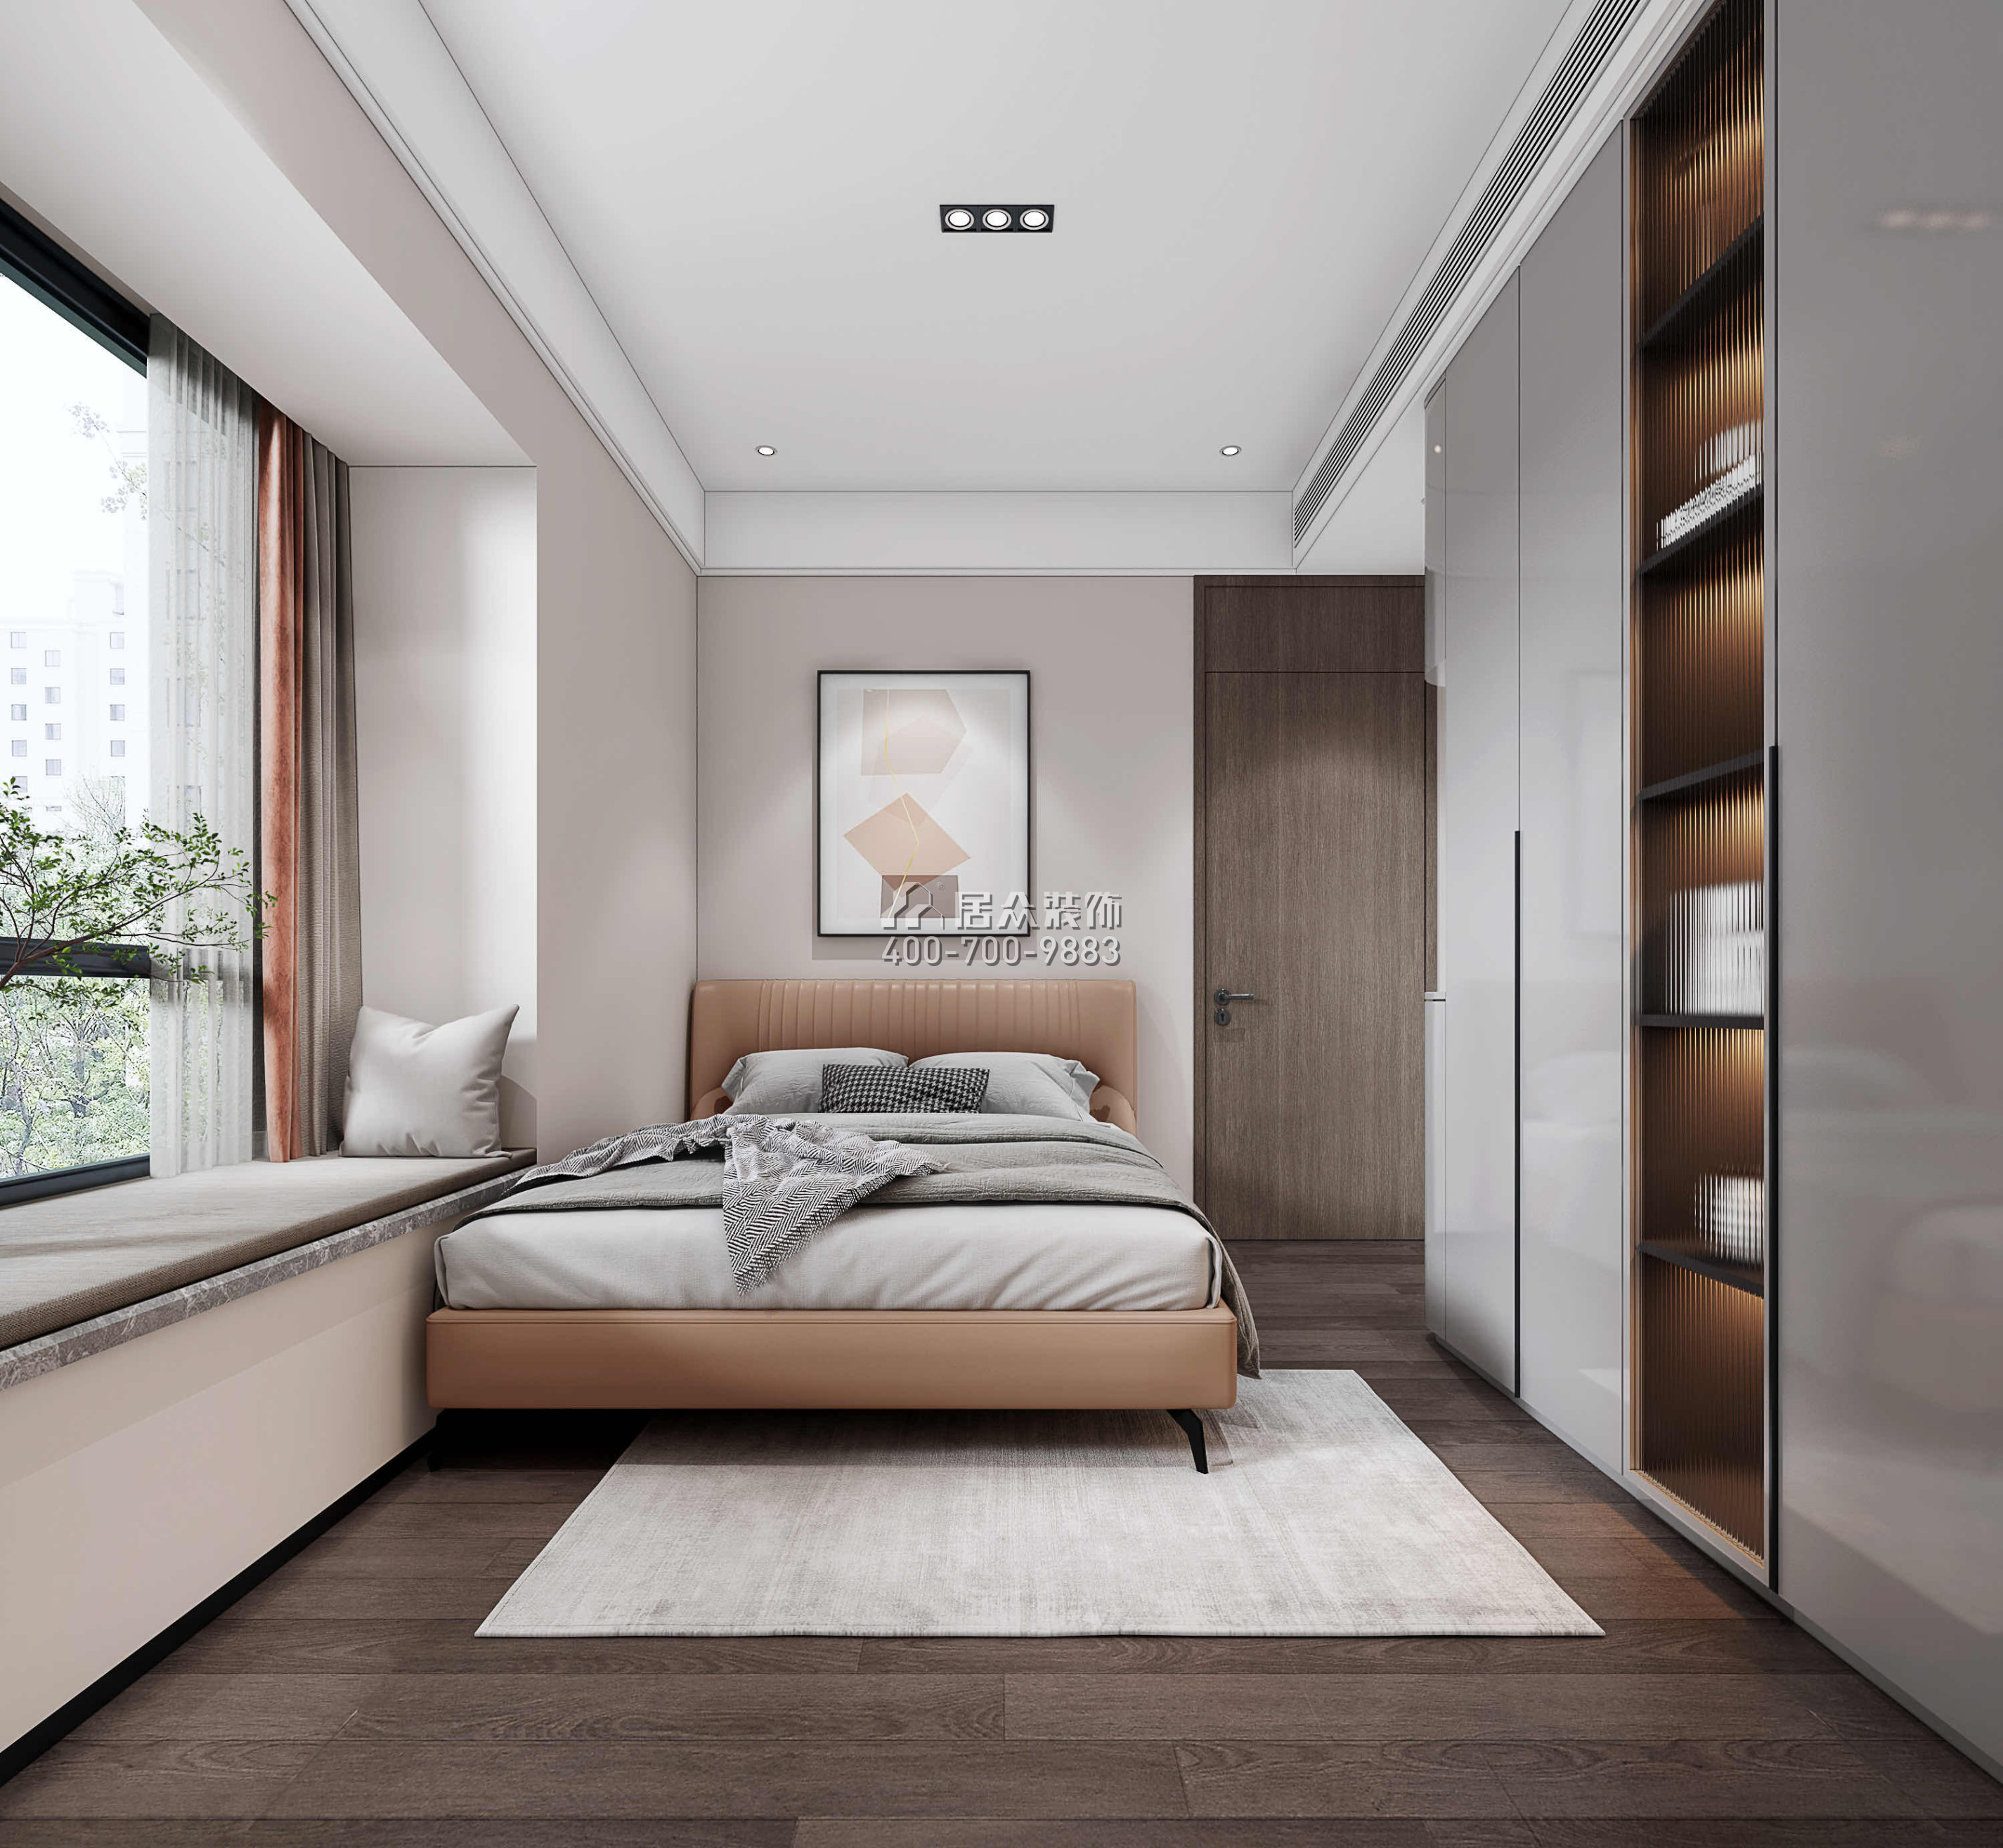 南海玫瑰園三期180平方米現代簡約風格平層戶型臥室裝修效果圖